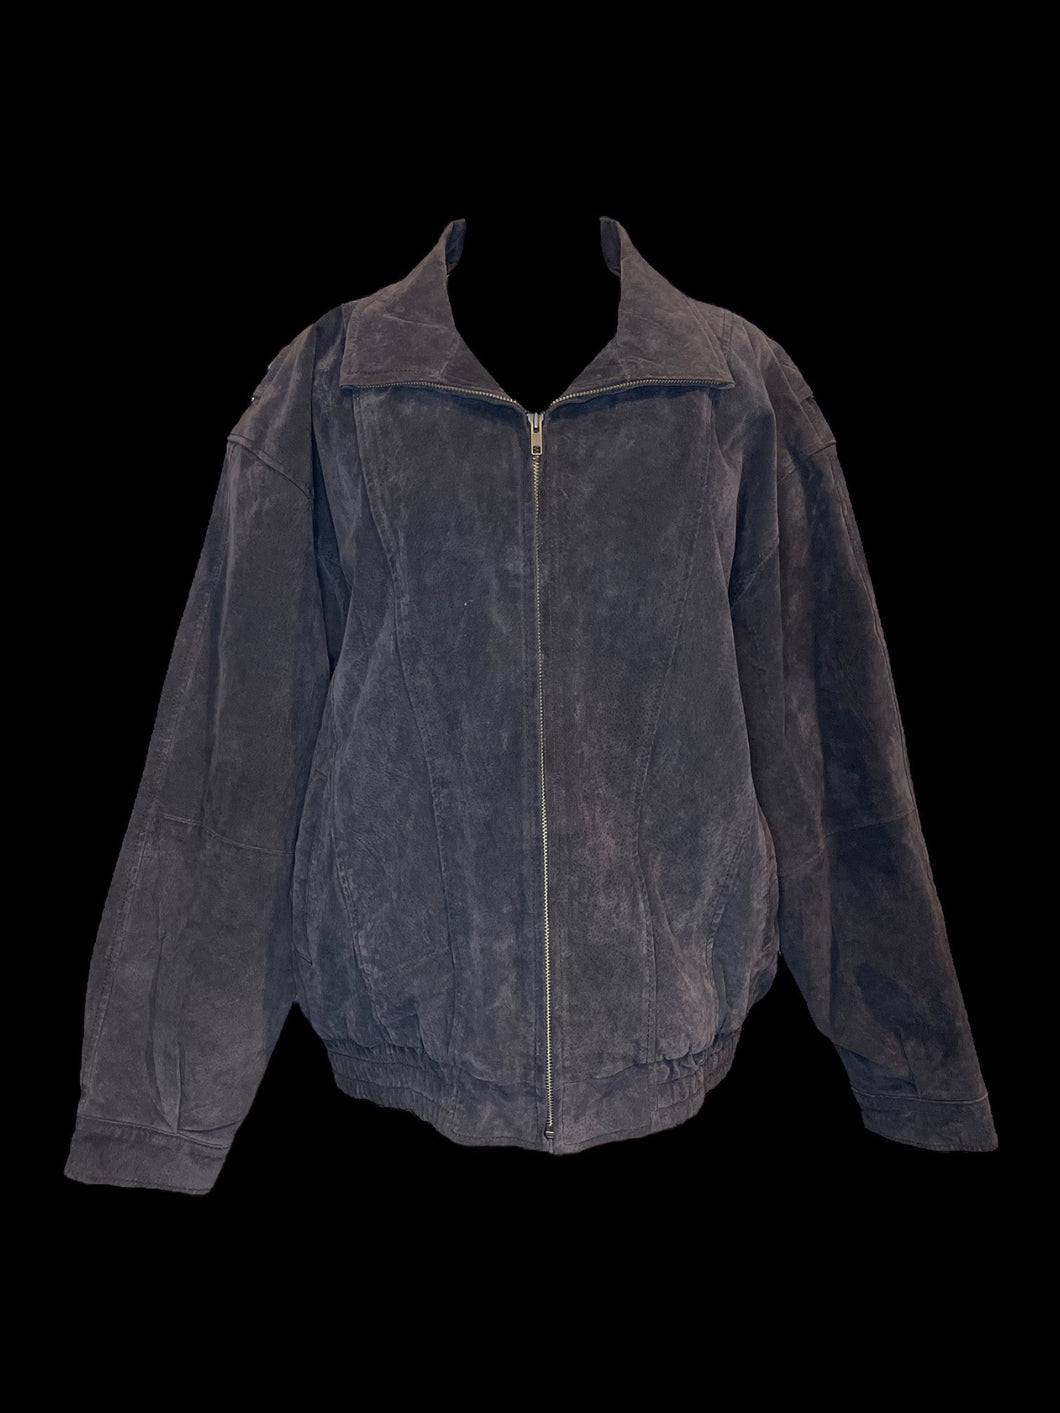 2X Vintage 80s dark brown leather zip up jacket w/ folded collar, button cuffs, & pockets